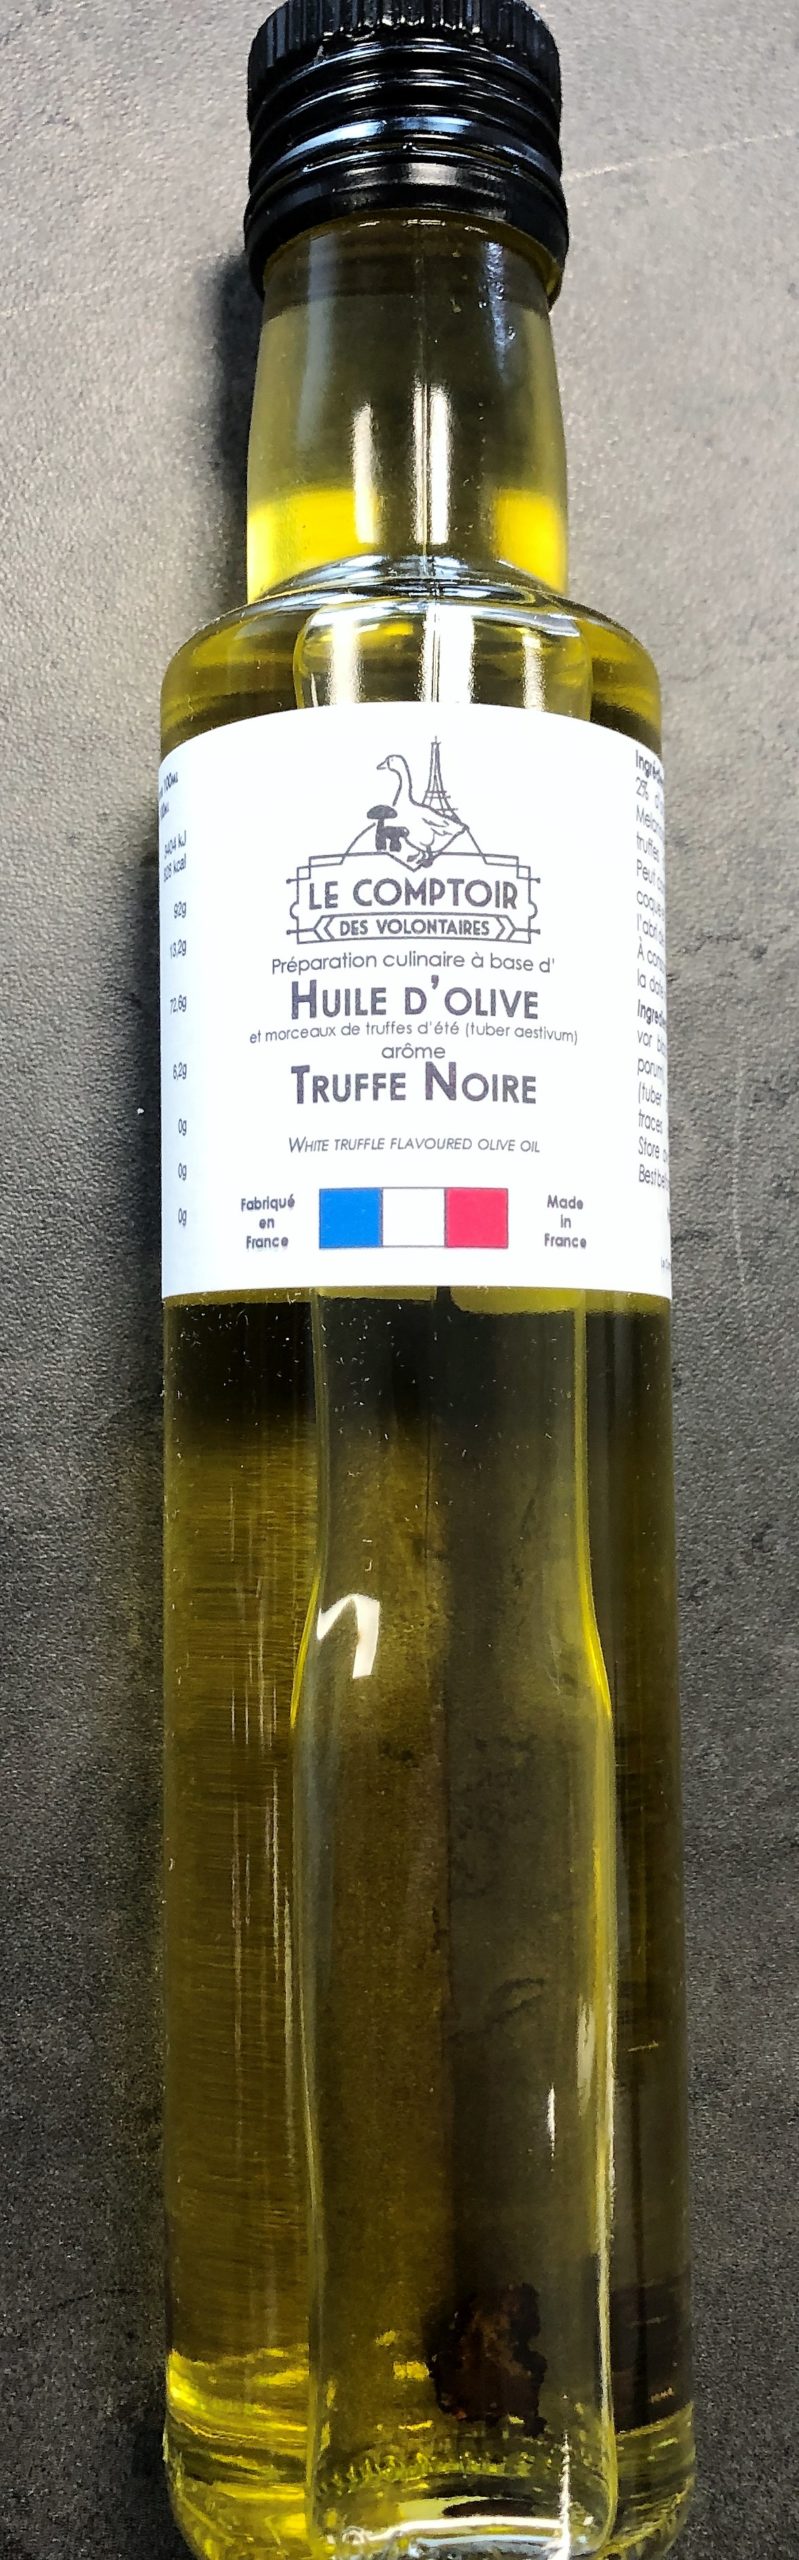 Huile d'olive arôme truffe noire 25cl